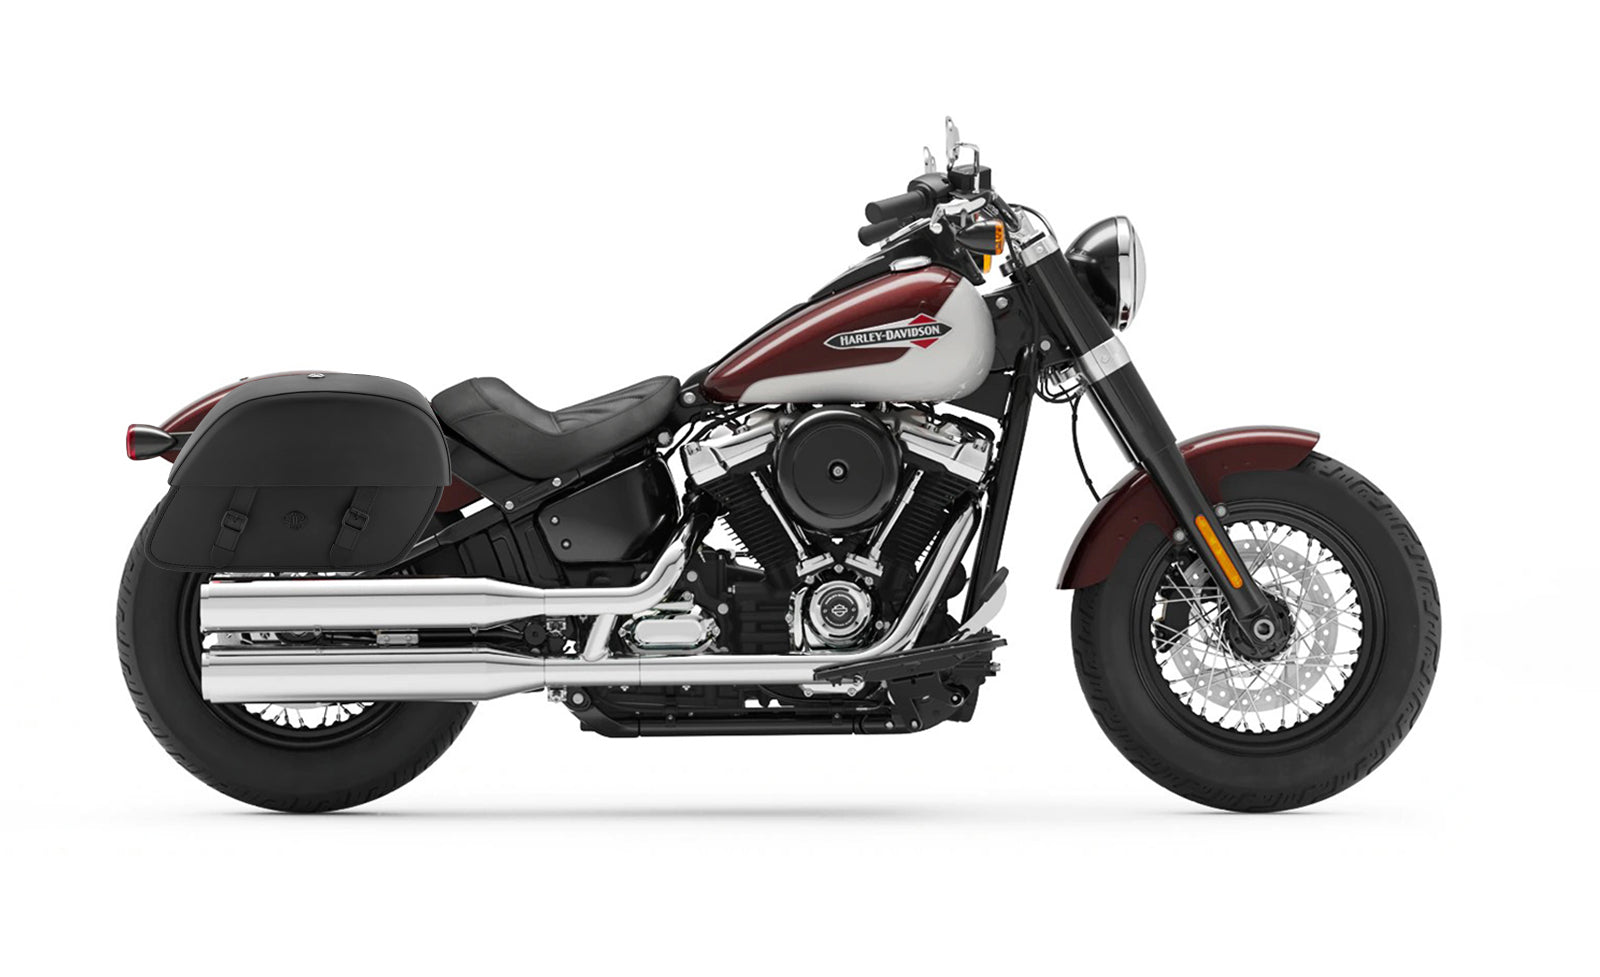 28L - Baelor Medium Saddlebags for Harley Softail Slim FLSL on Bike Photo @expand